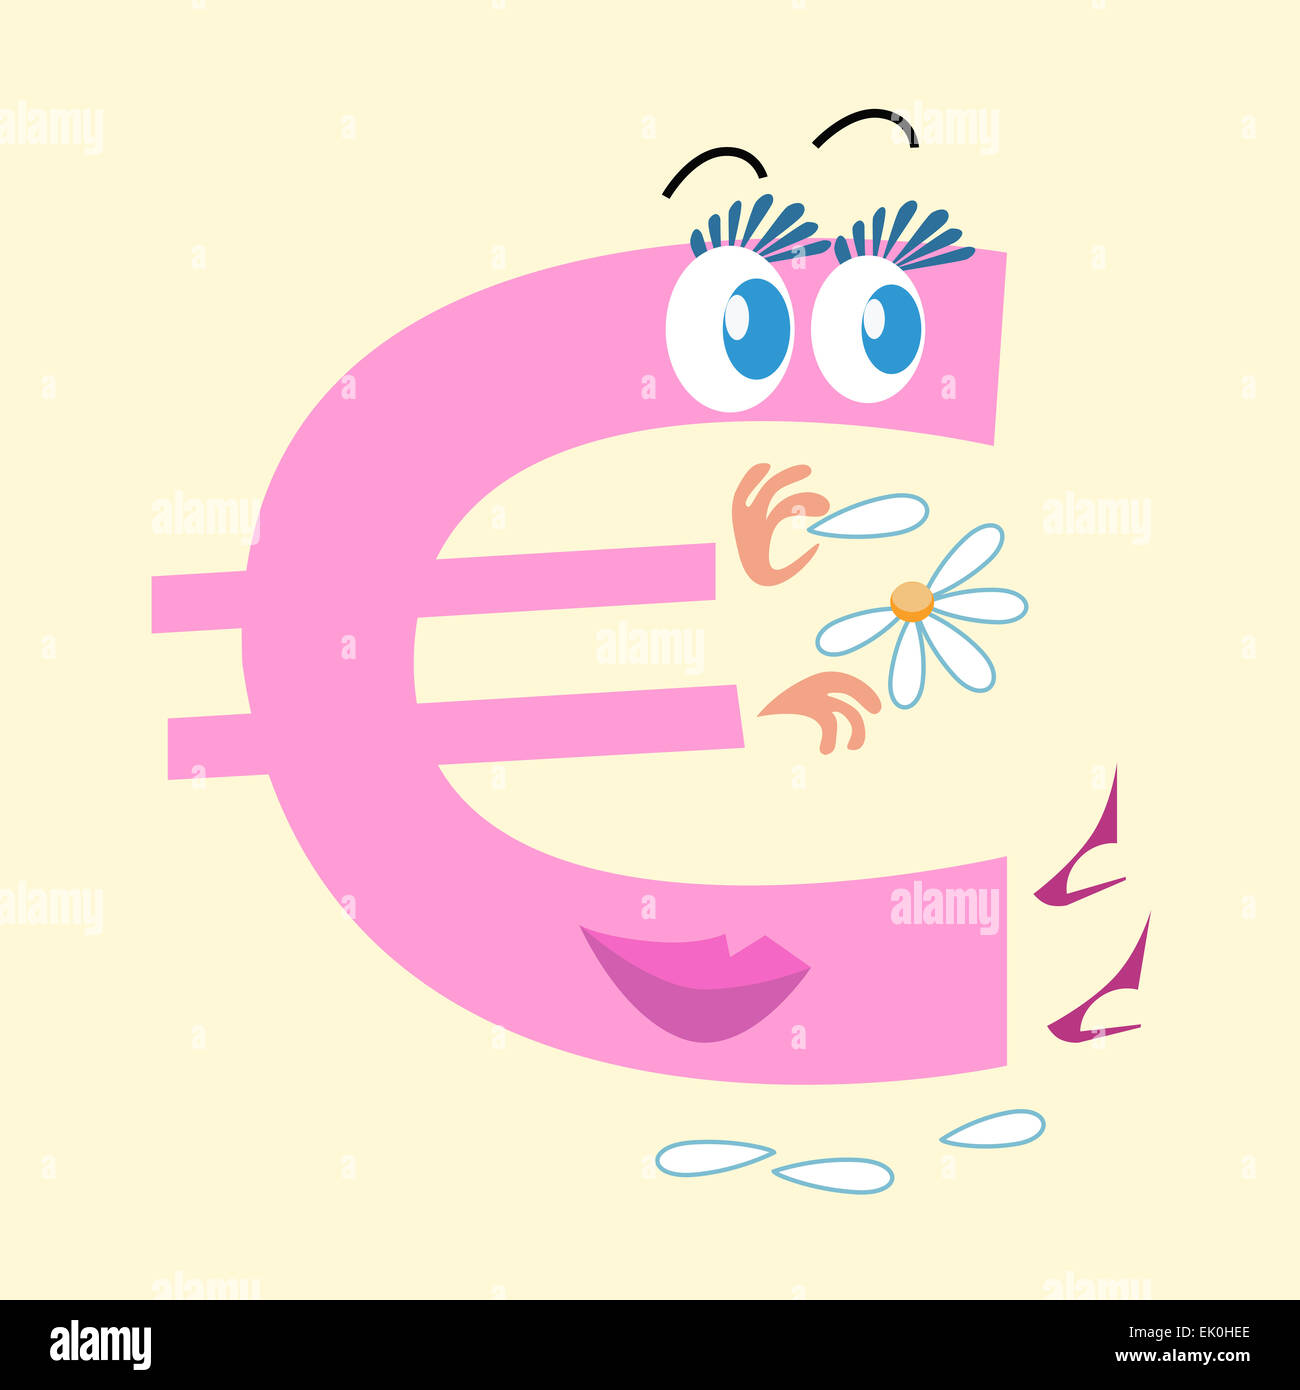 Il simbolo dell'euro è la moneta nazionale dell'Europa. Il carattere del simbolo dell'euro si interroga sul collegamento daisy amore lui o non. Azienda Foto Stock